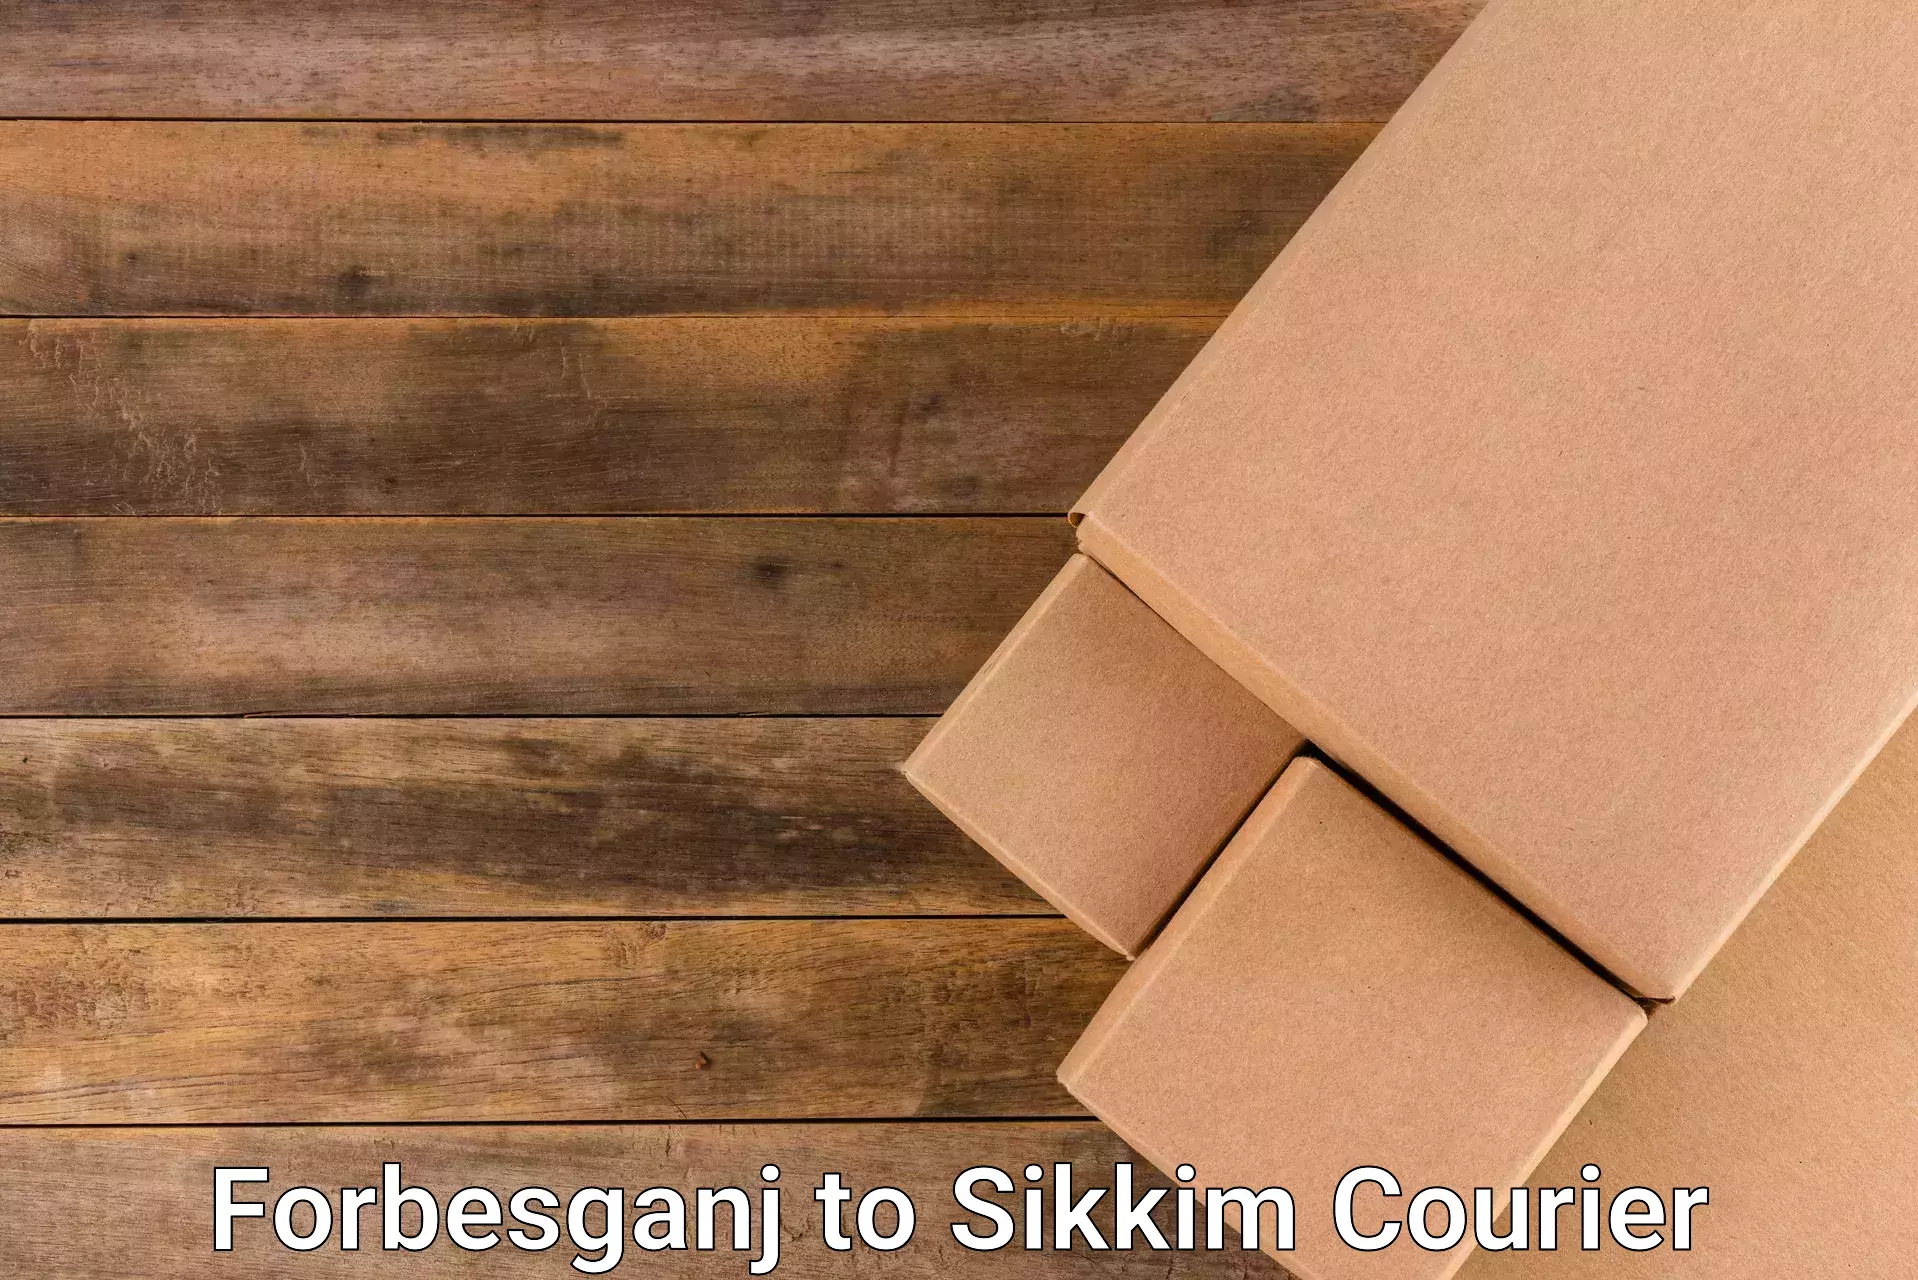 Smart logistics strategies Forbesganj to Sikkim